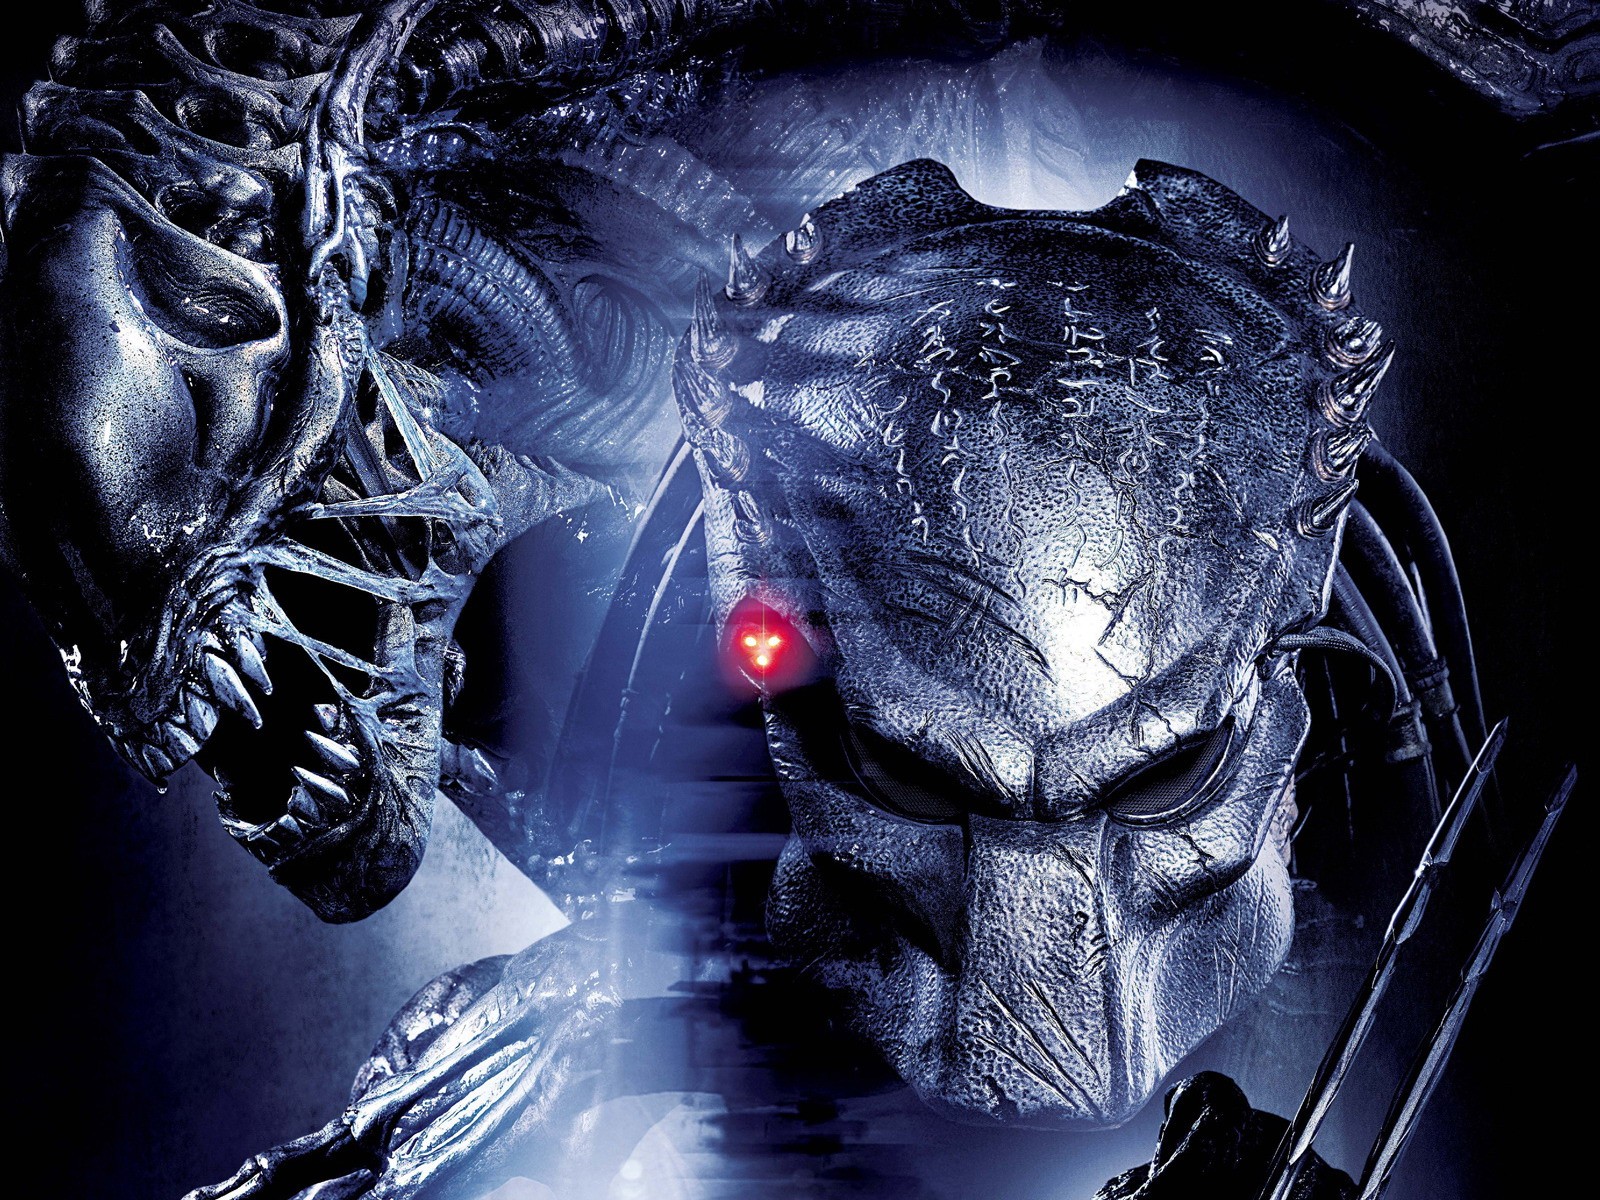 Aliens vs predator requiem s for desktop download free aliens vs predator requiem pictures and backgrounds for pc